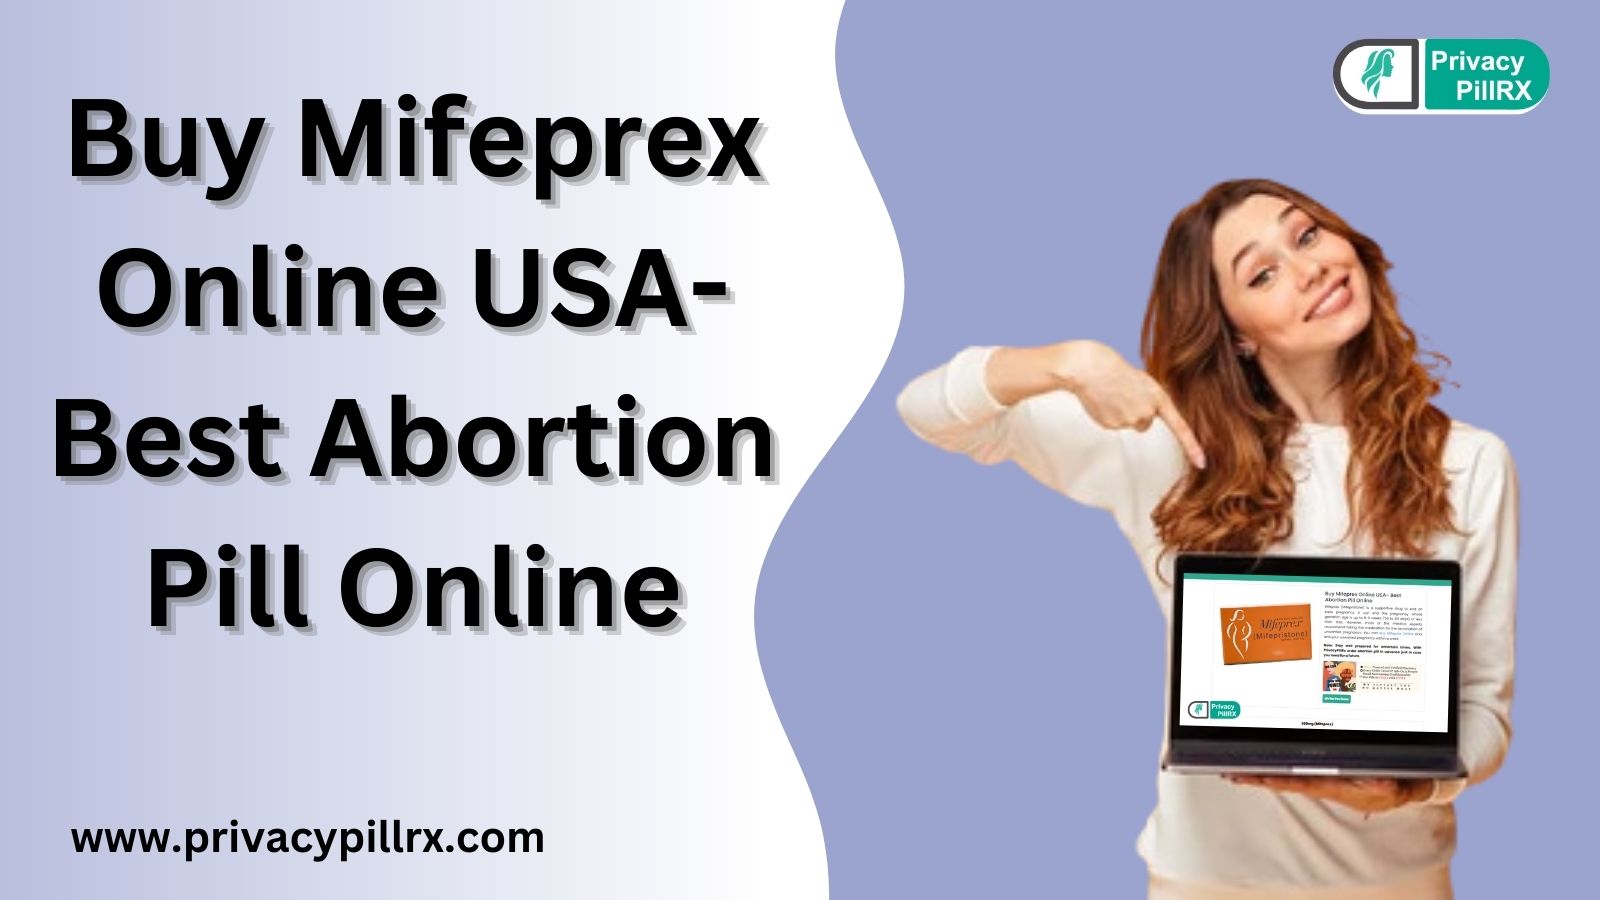 Buy Mifeprex Online USA- Best Abortion Pill Online - photo